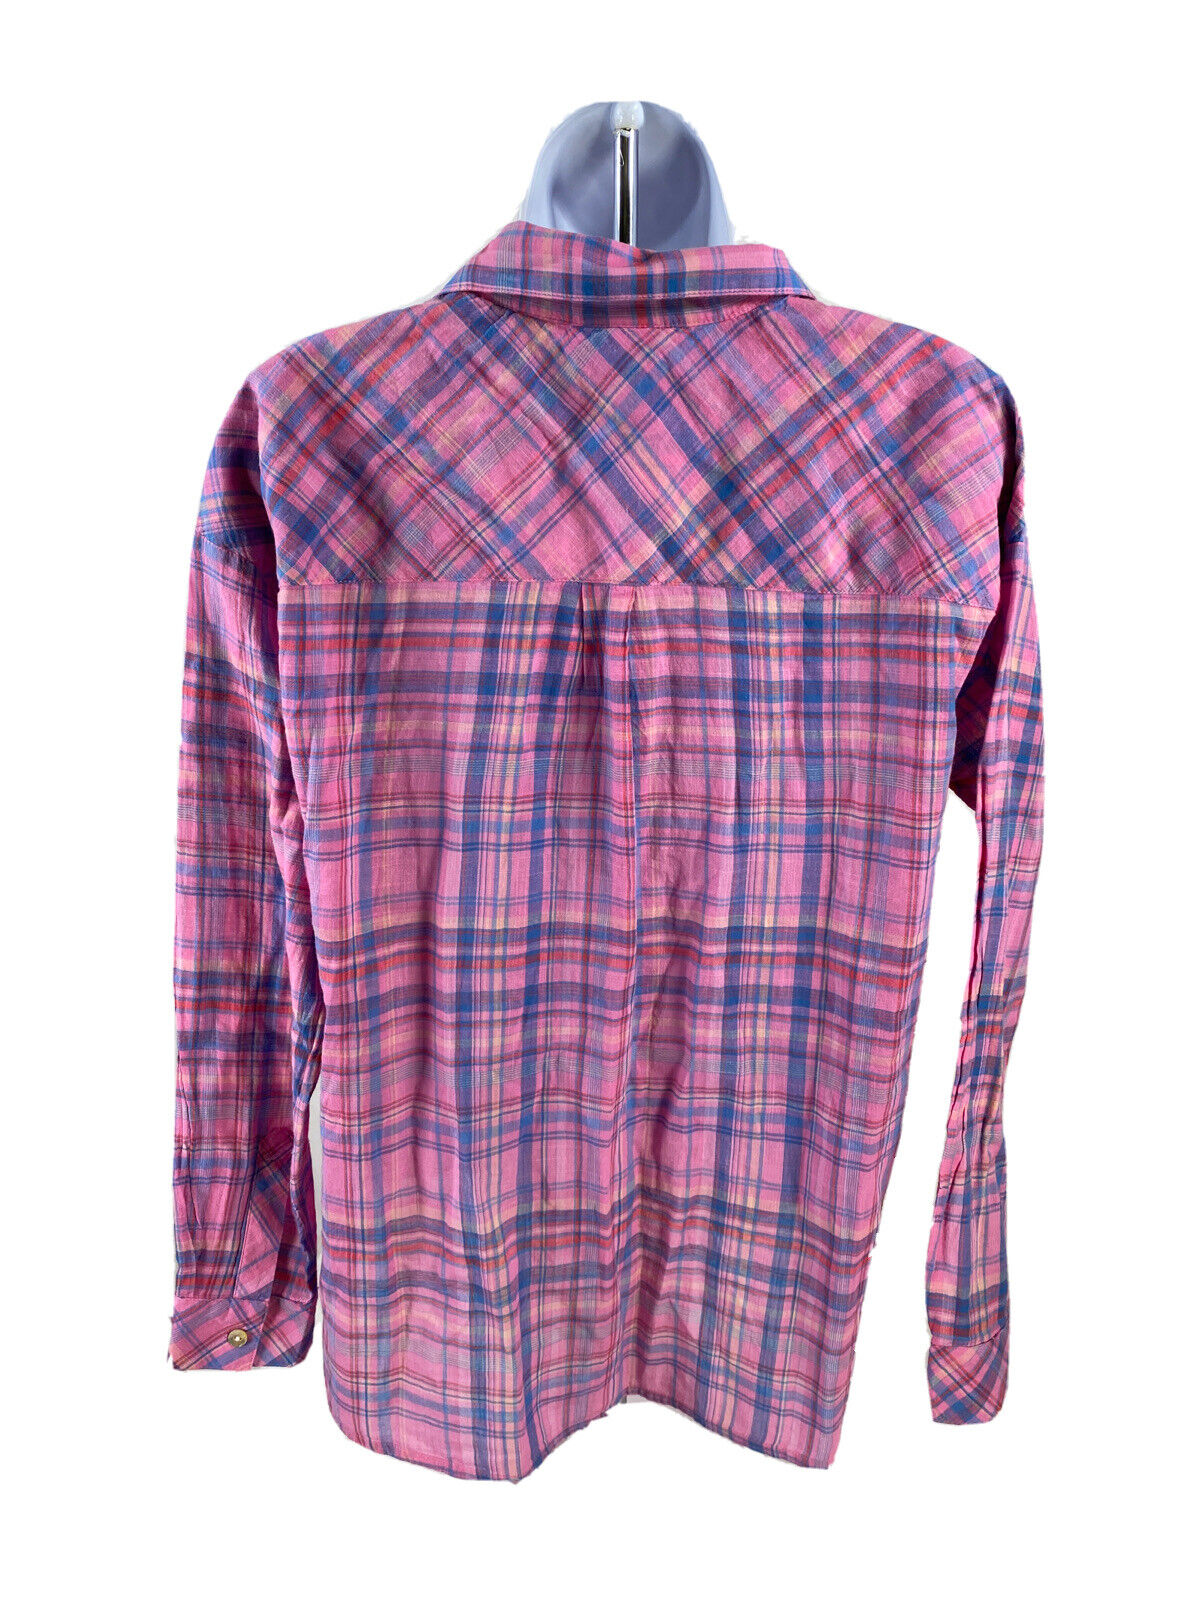 Women's Pink Plaid Long Sleeve Button Up Shirt - S